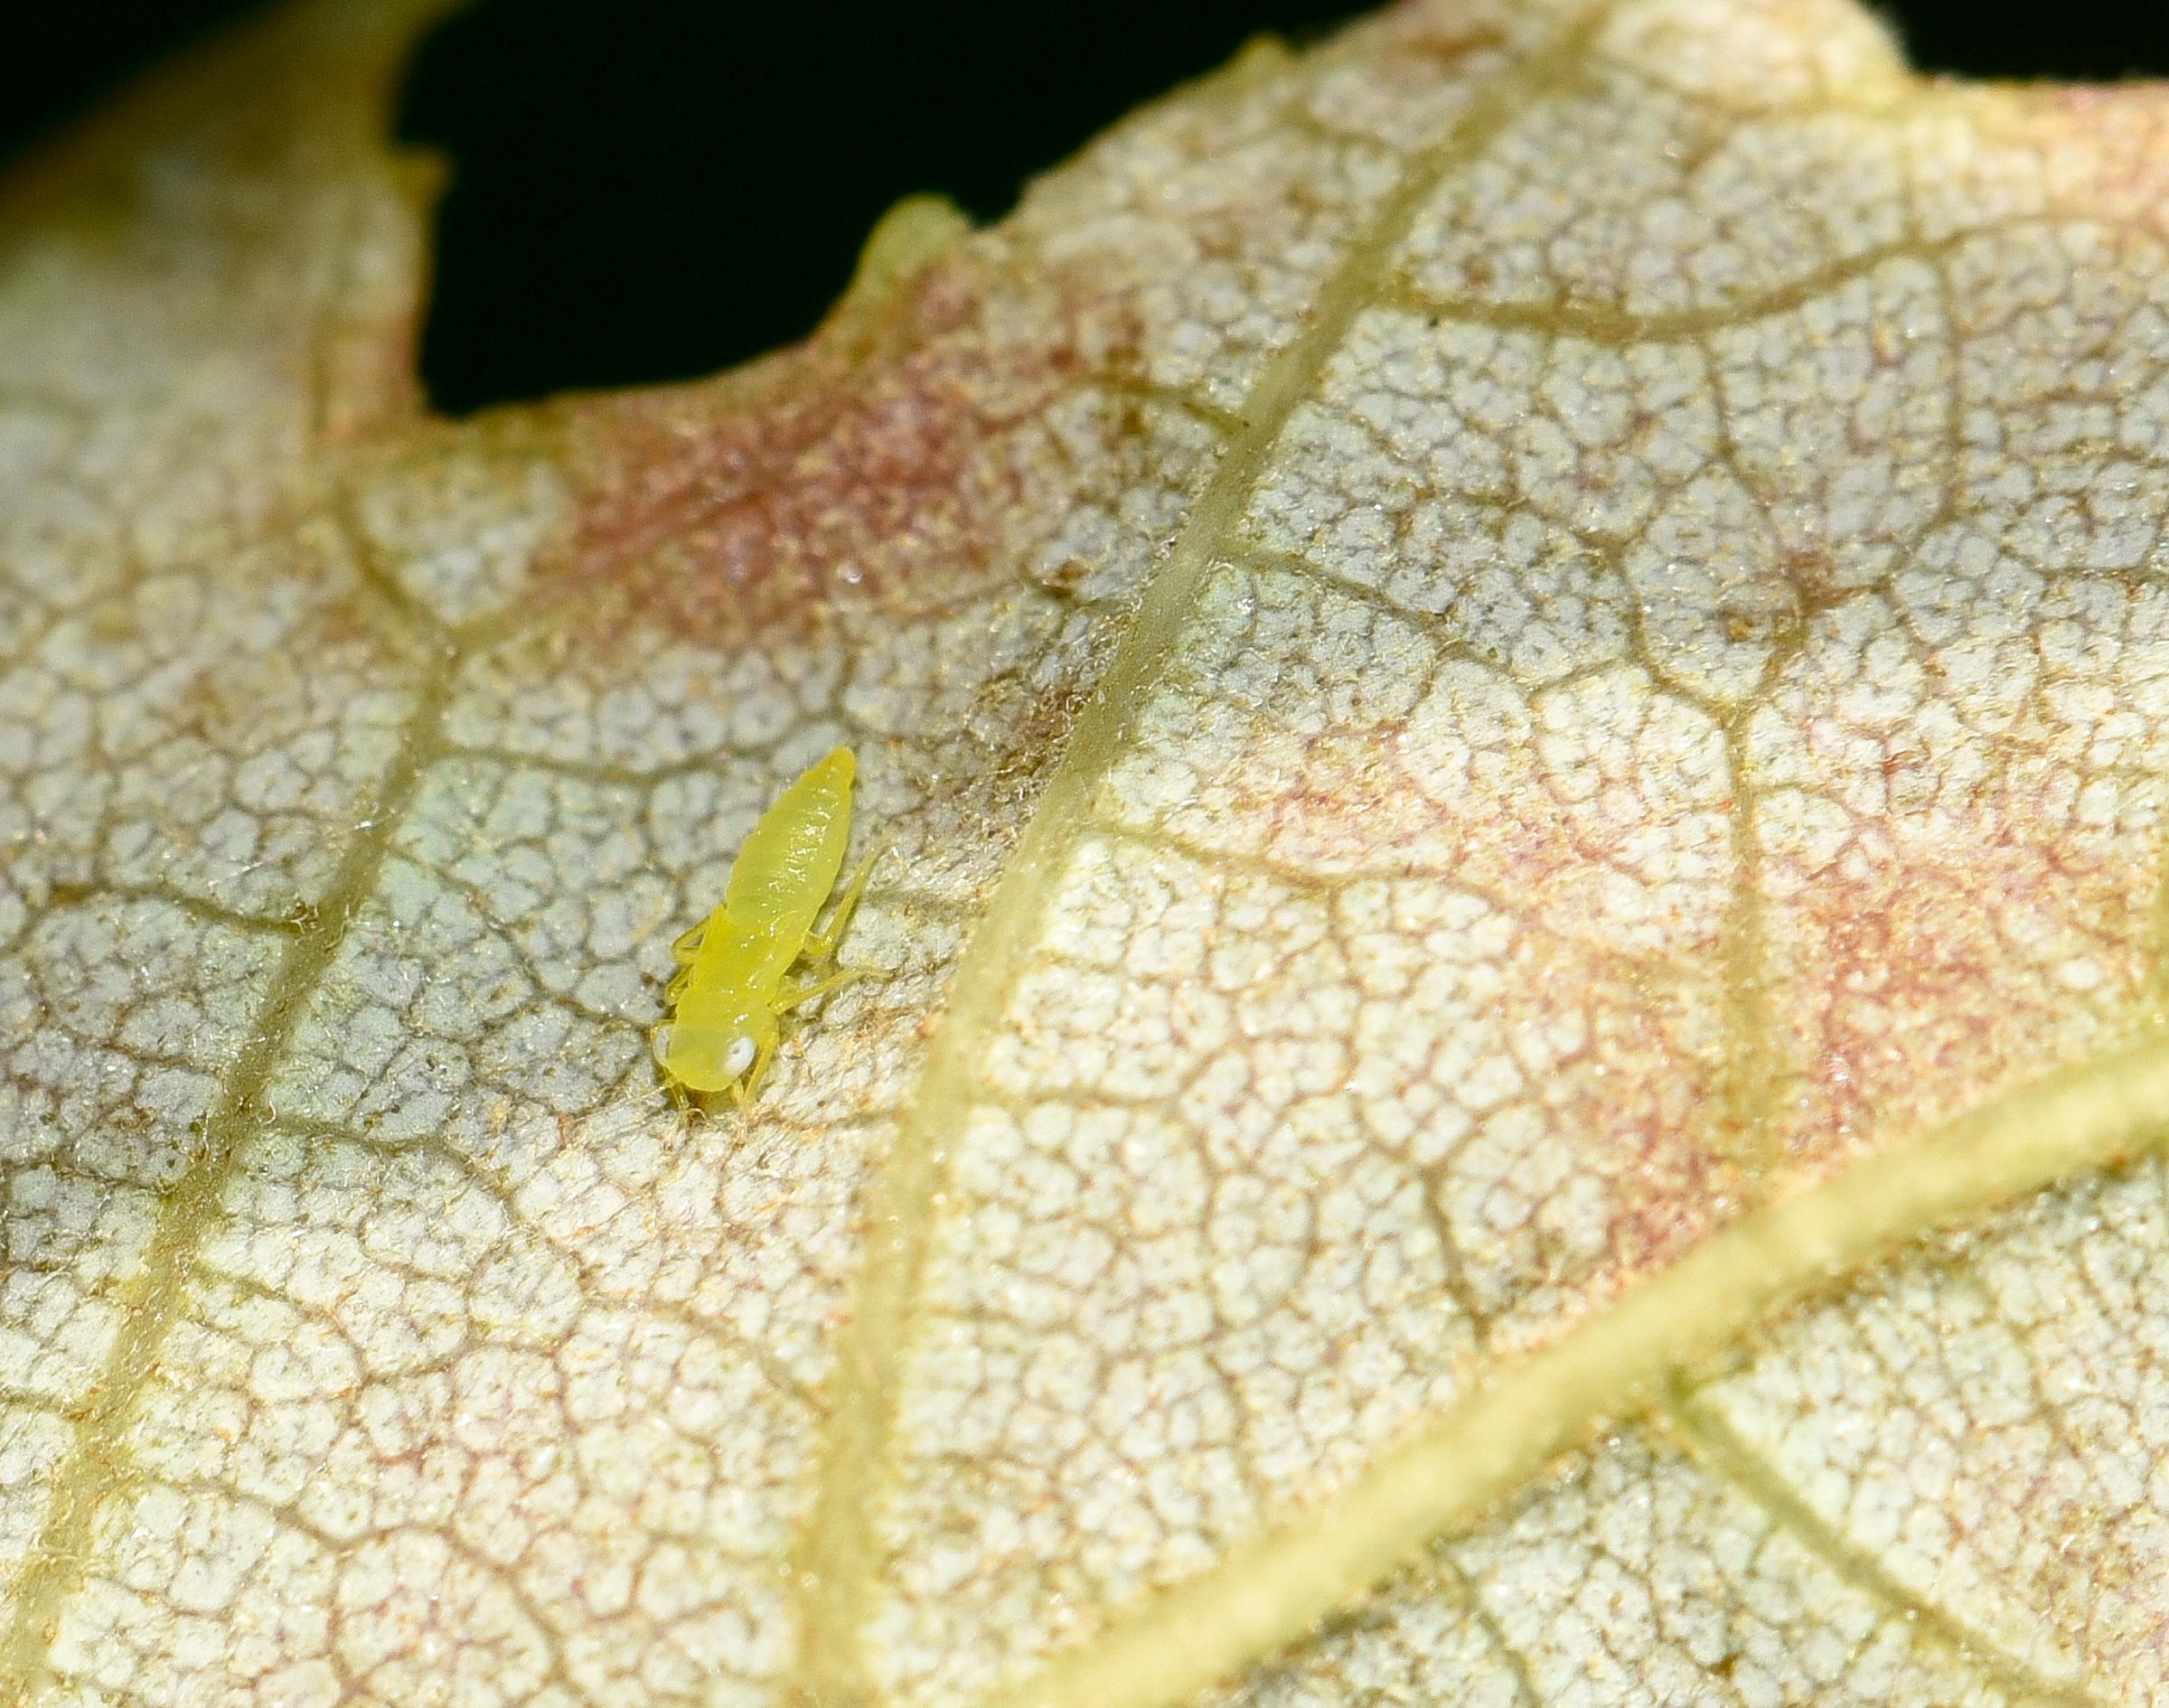 Potato leafhopper nymph